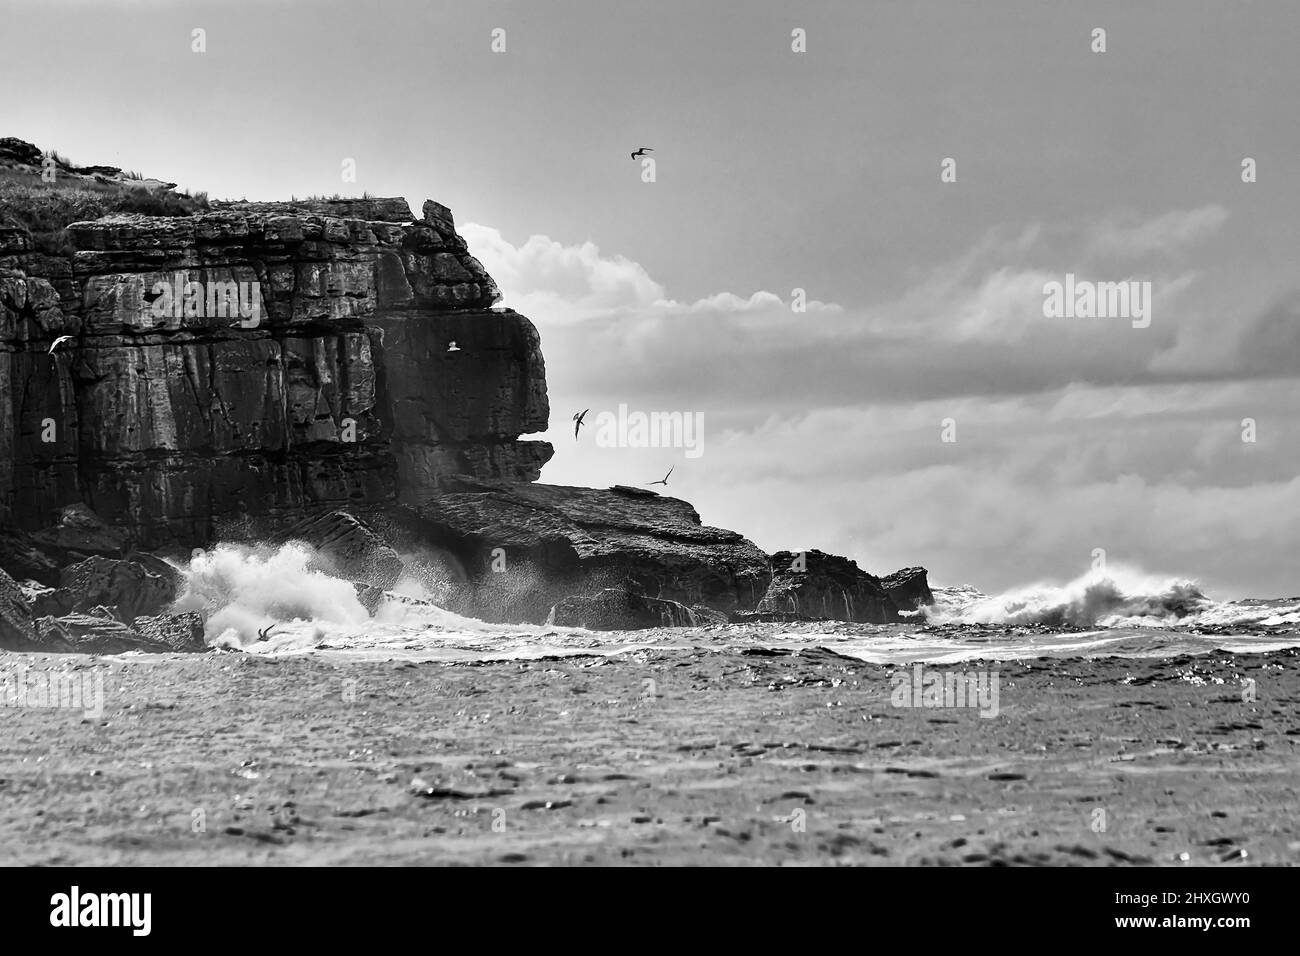 El borde del acantilado de las rocas de la isla de Bowen en el viento alto y las olas fuertes en la marea alta - paisaje marino de la costa del pacífico australiano. Foto de stock